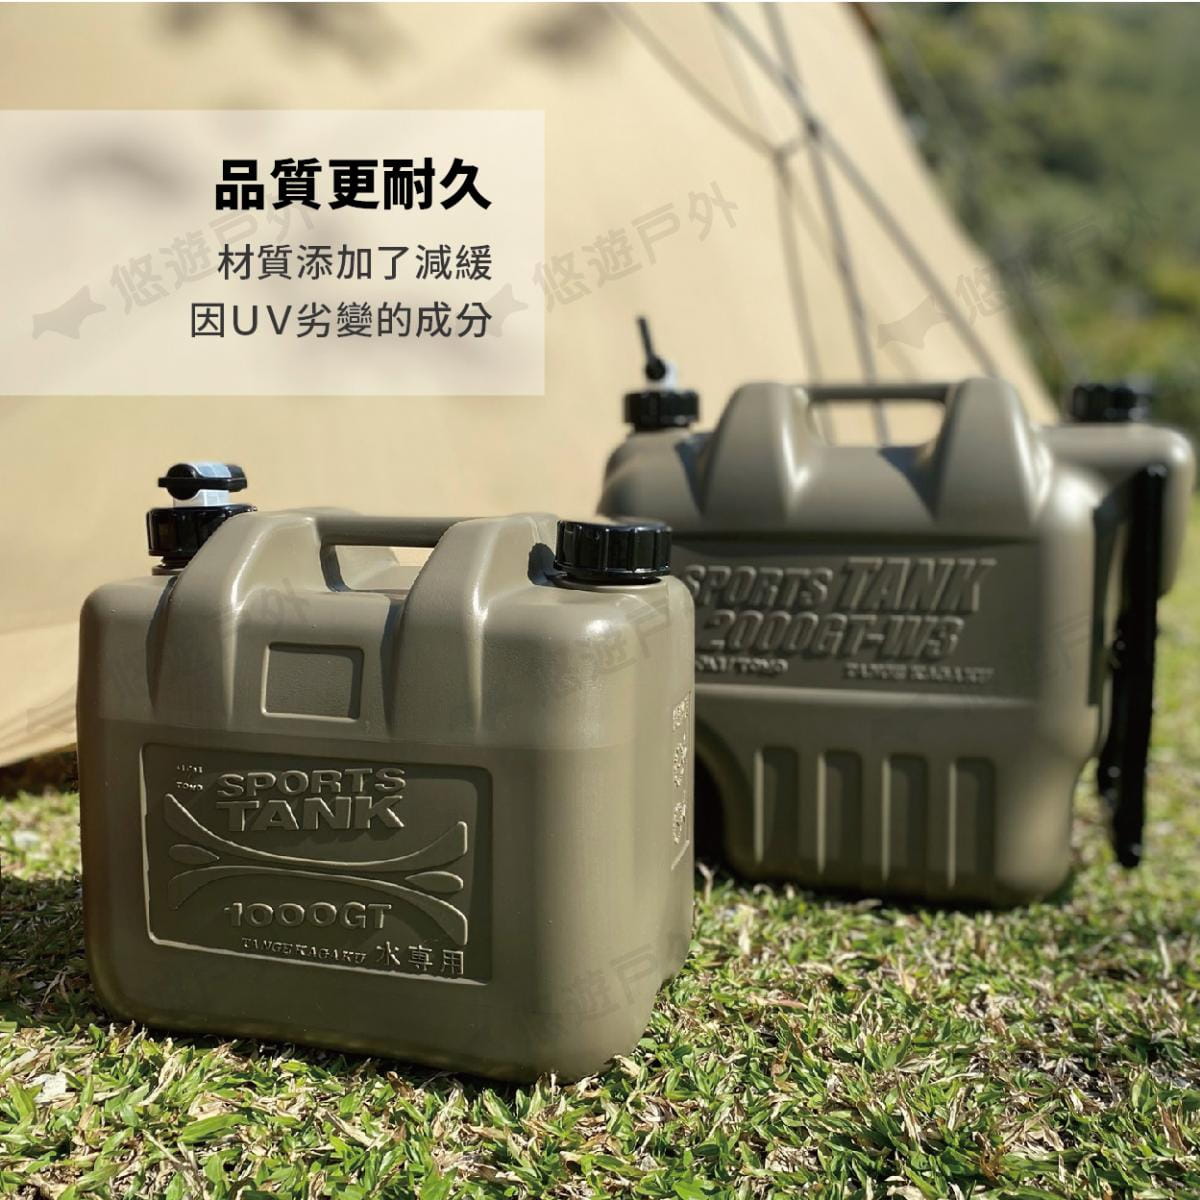 【悠遊】日製水桶 20L 帶輪子 水箱 儲水桶 飲水桶 重型載水器 軍式風 風格選物 多用途水箱 1